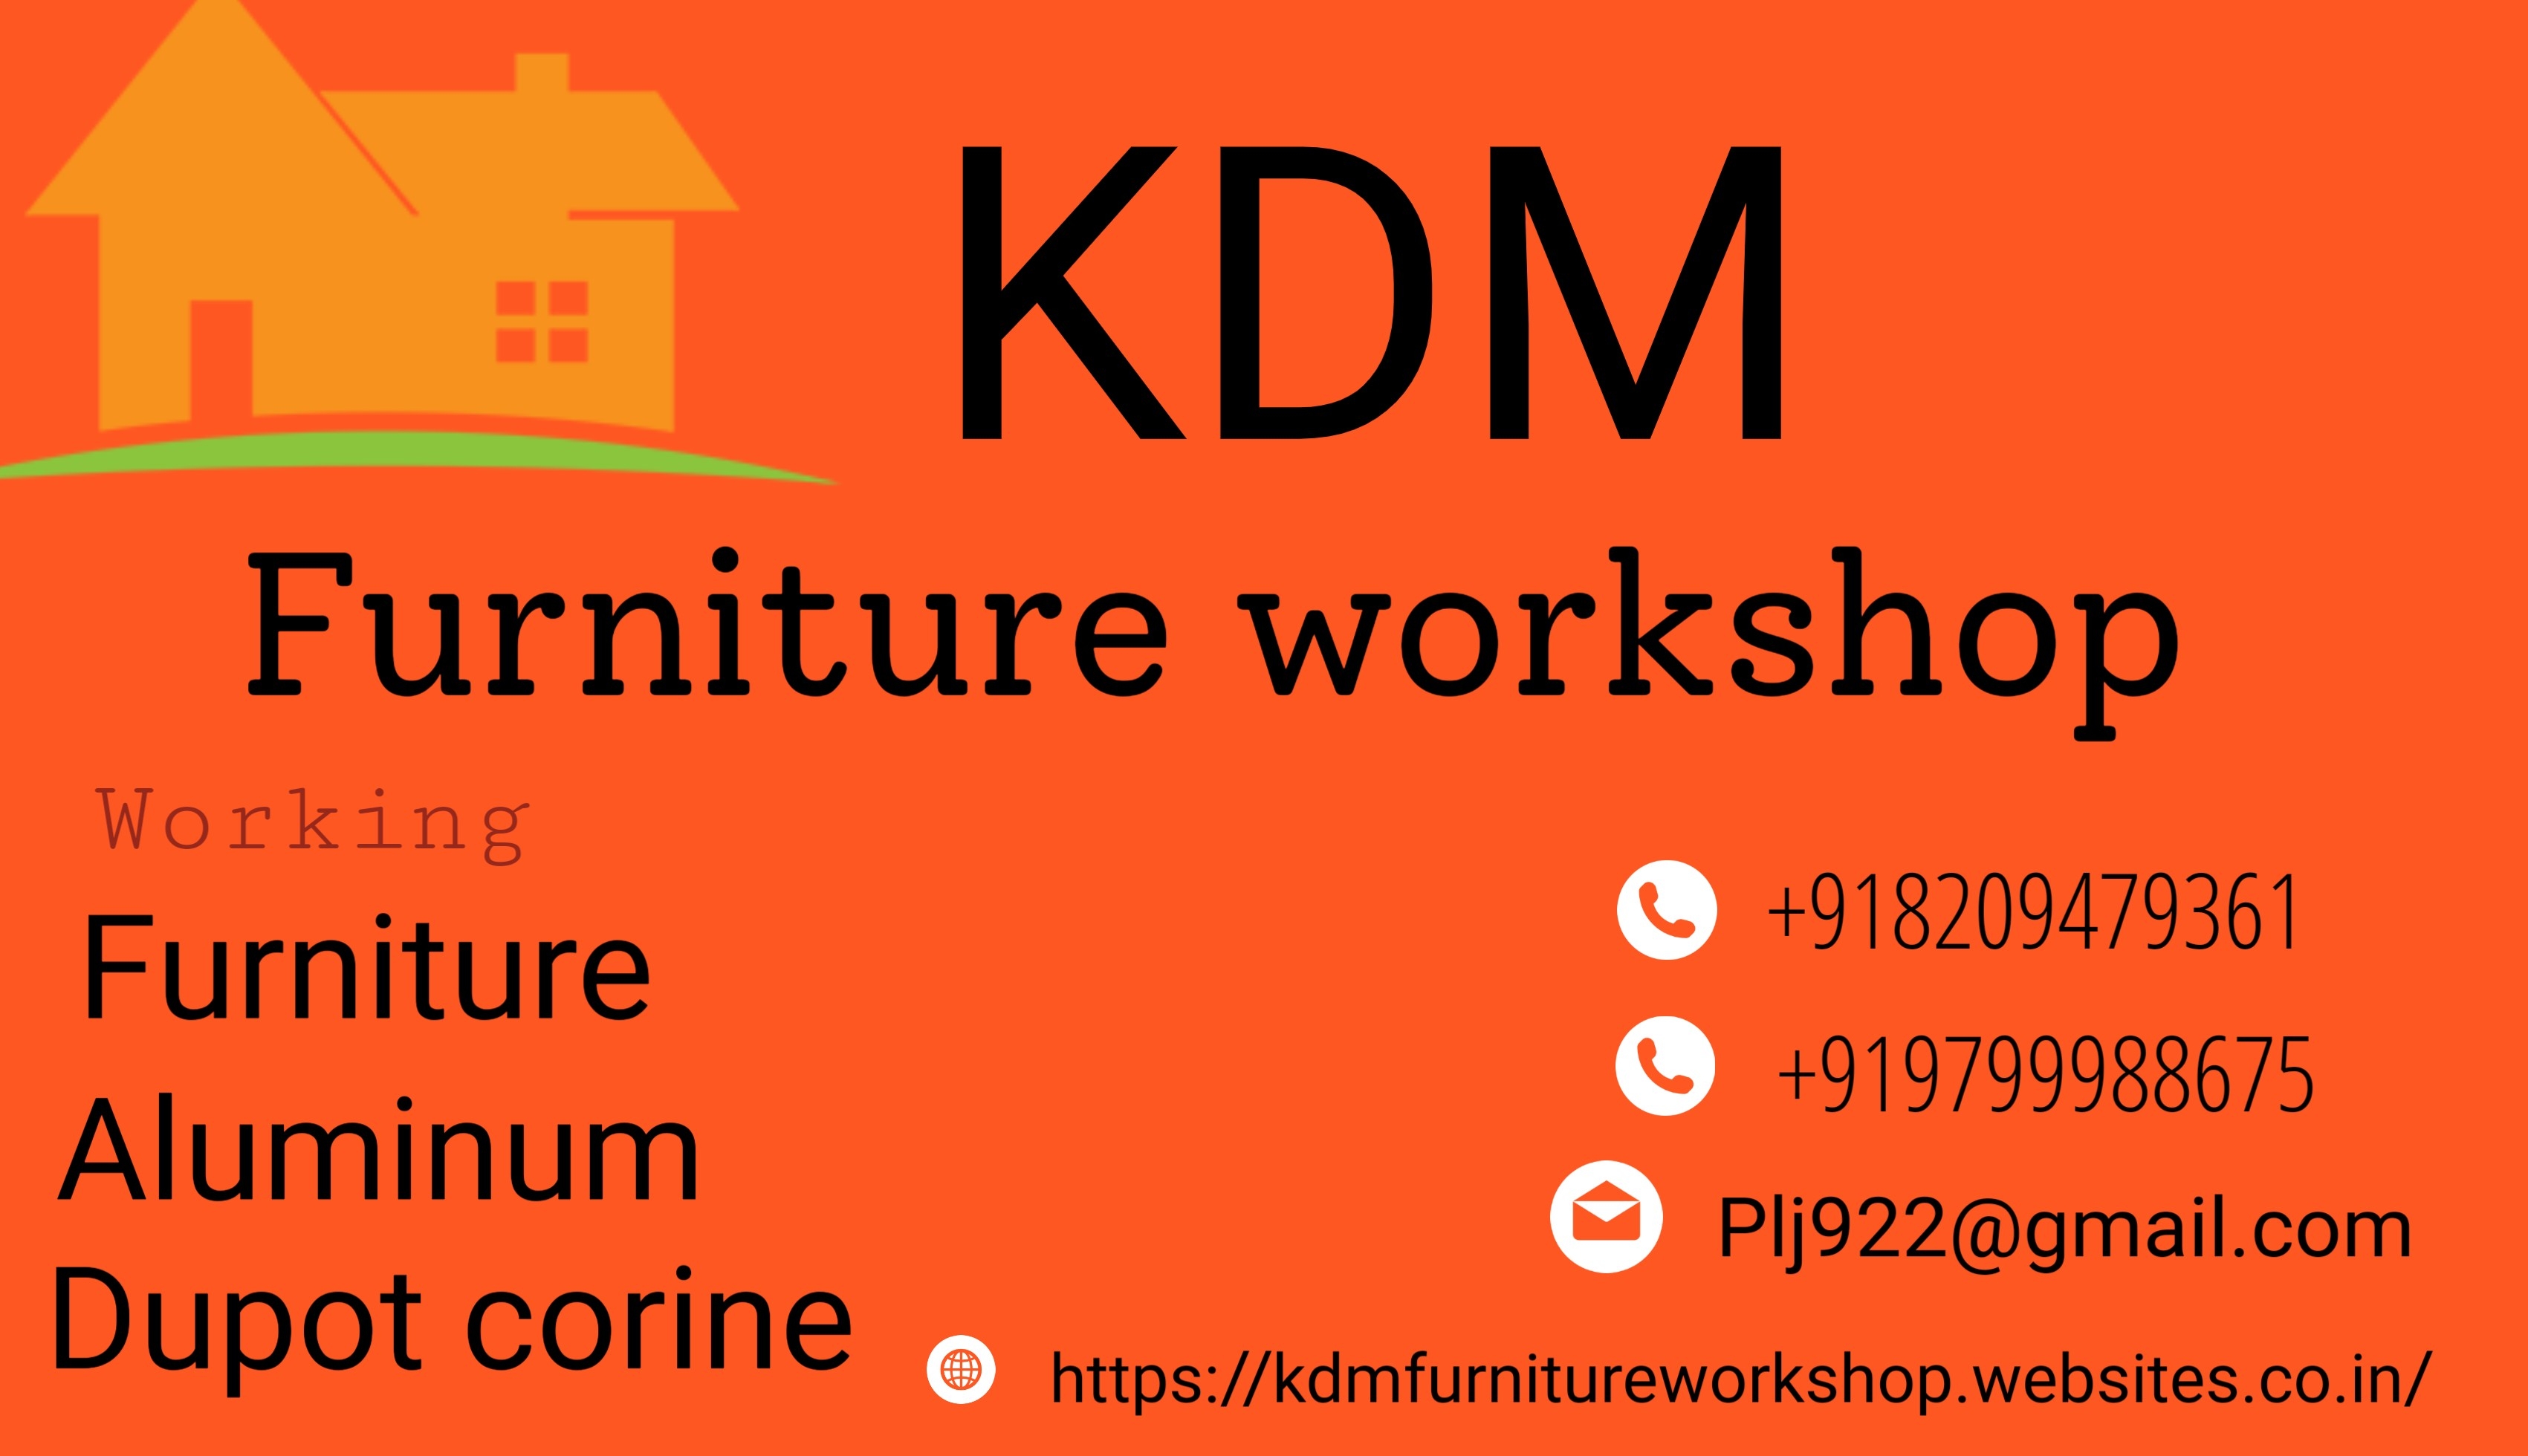 KDM furniture workshop logo